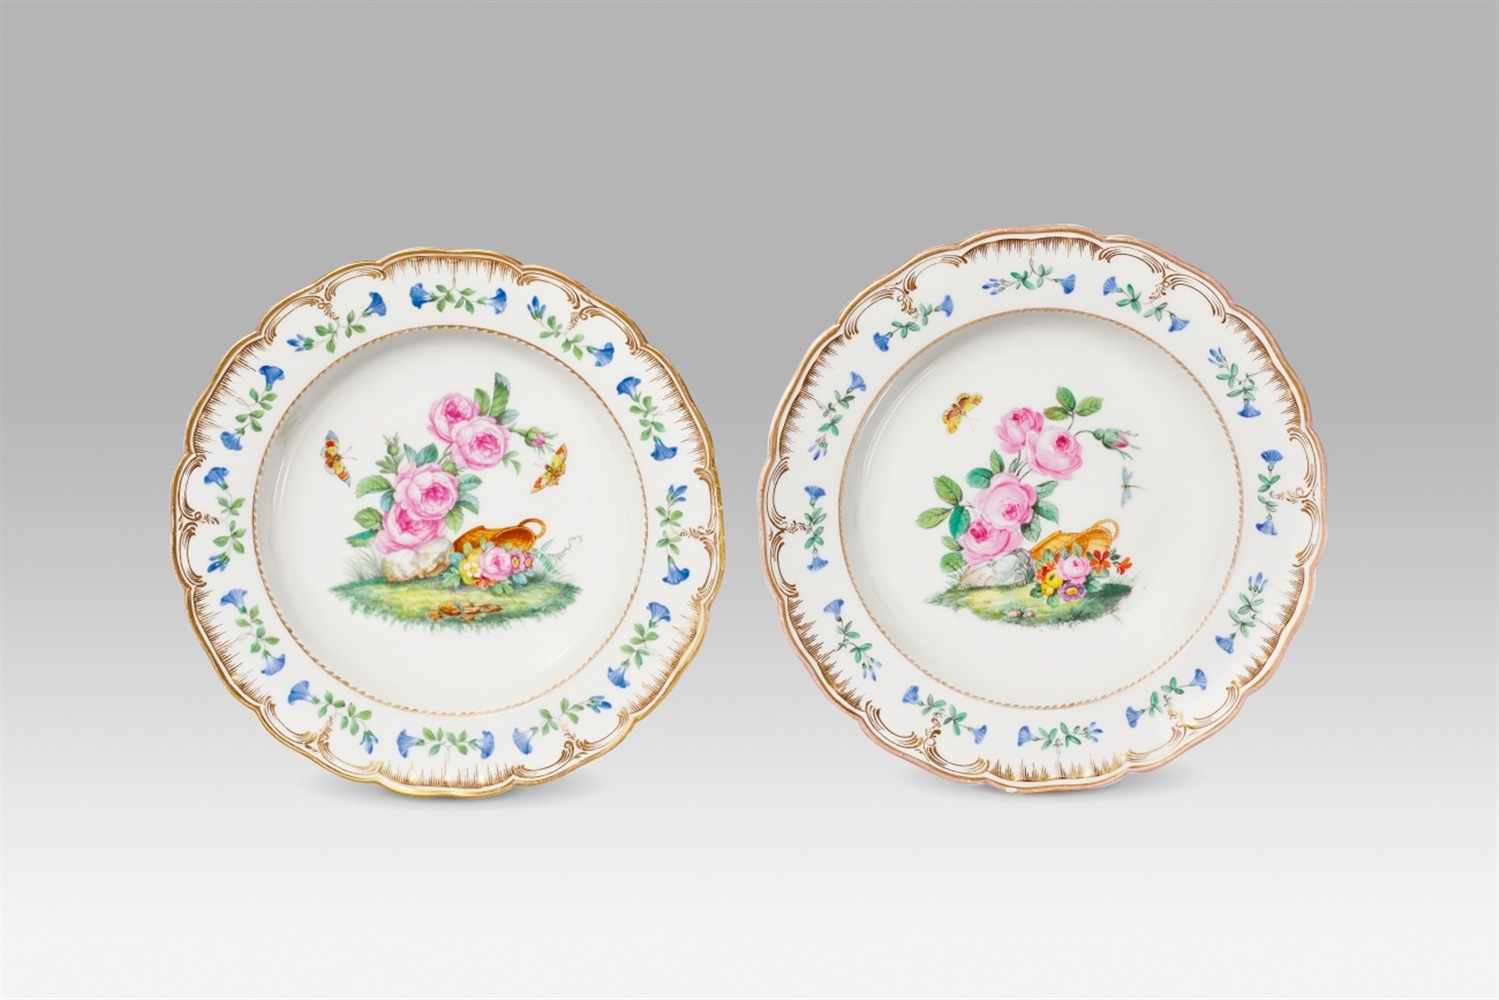 Zwei Suppenteller aus dem königlichen Speiseservice Porzellan, Emaildekor, Vergoldung. Neuglatt.